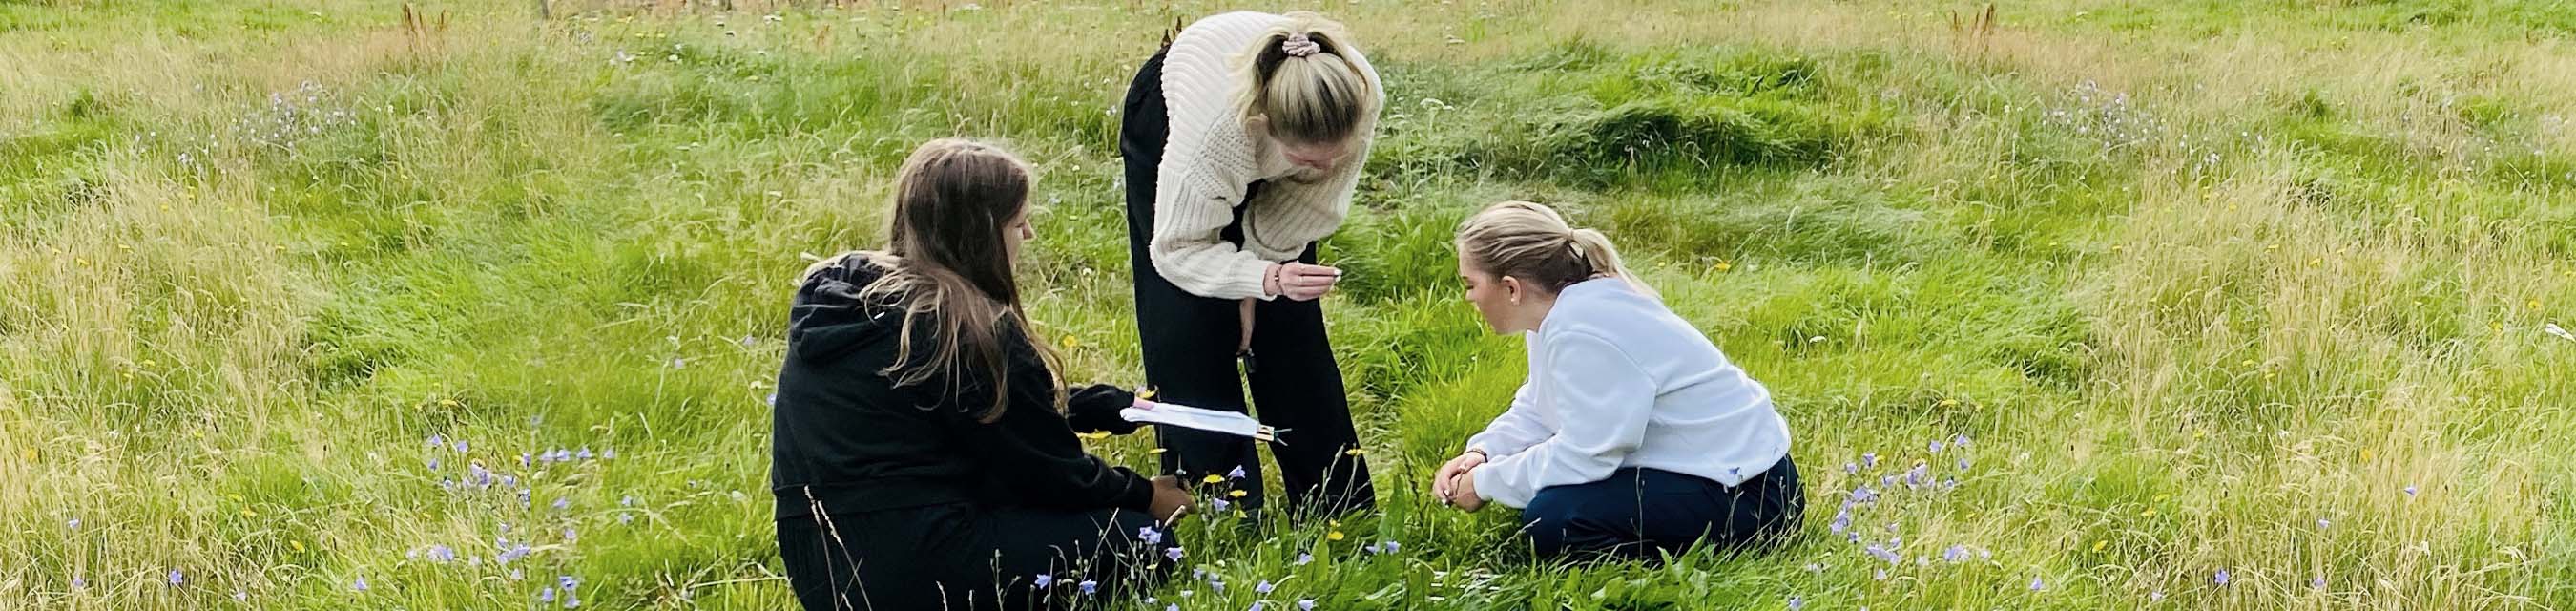 Tre elever undersöker växtlivet ute på en stor äng.